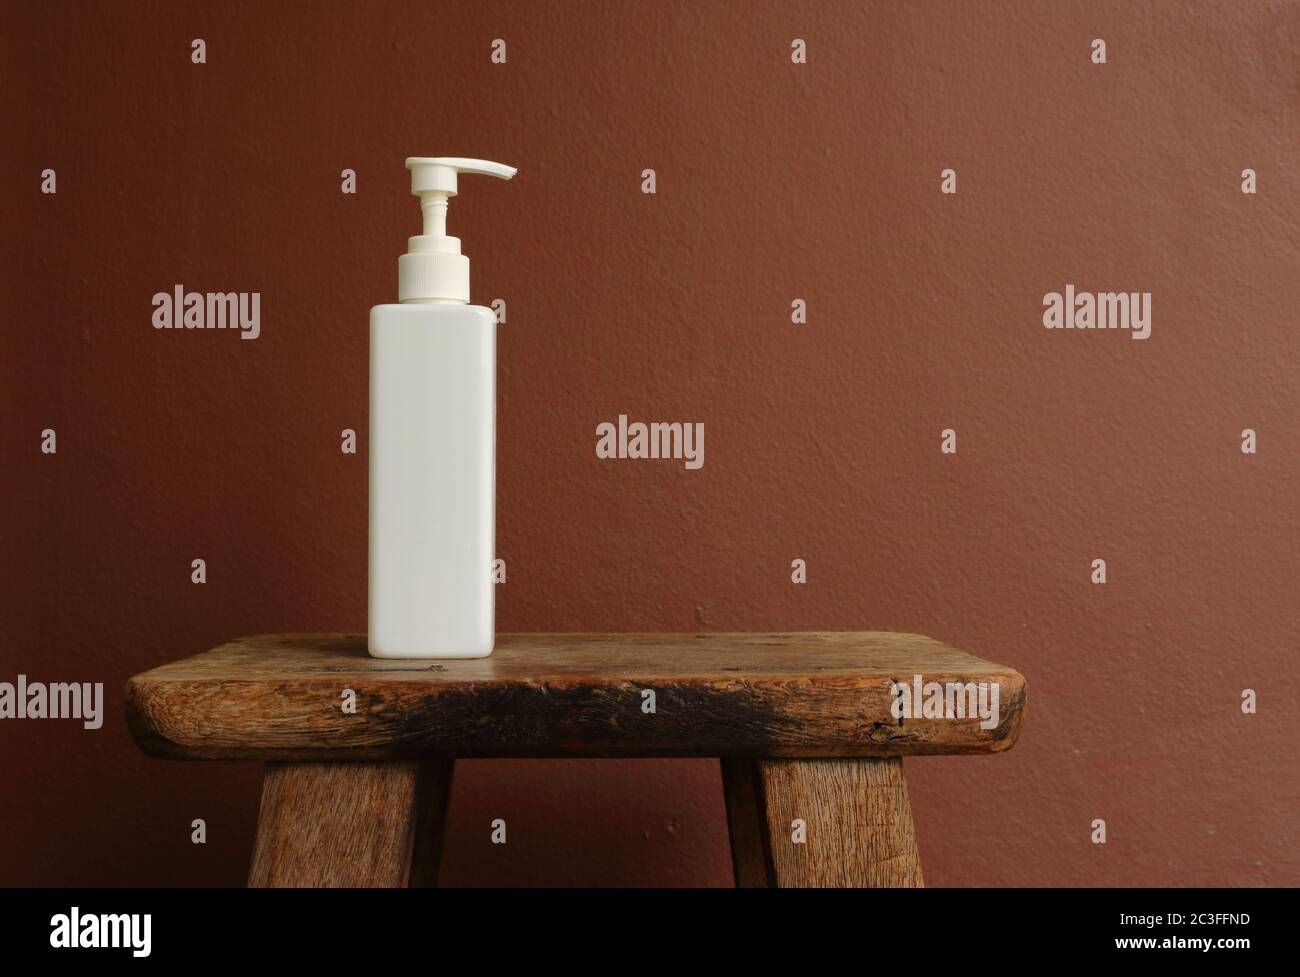 Gros plan bouteille vaporisée blanche placée sur une chaise en bois vintage contre un mur peint en marron Banque D'Images